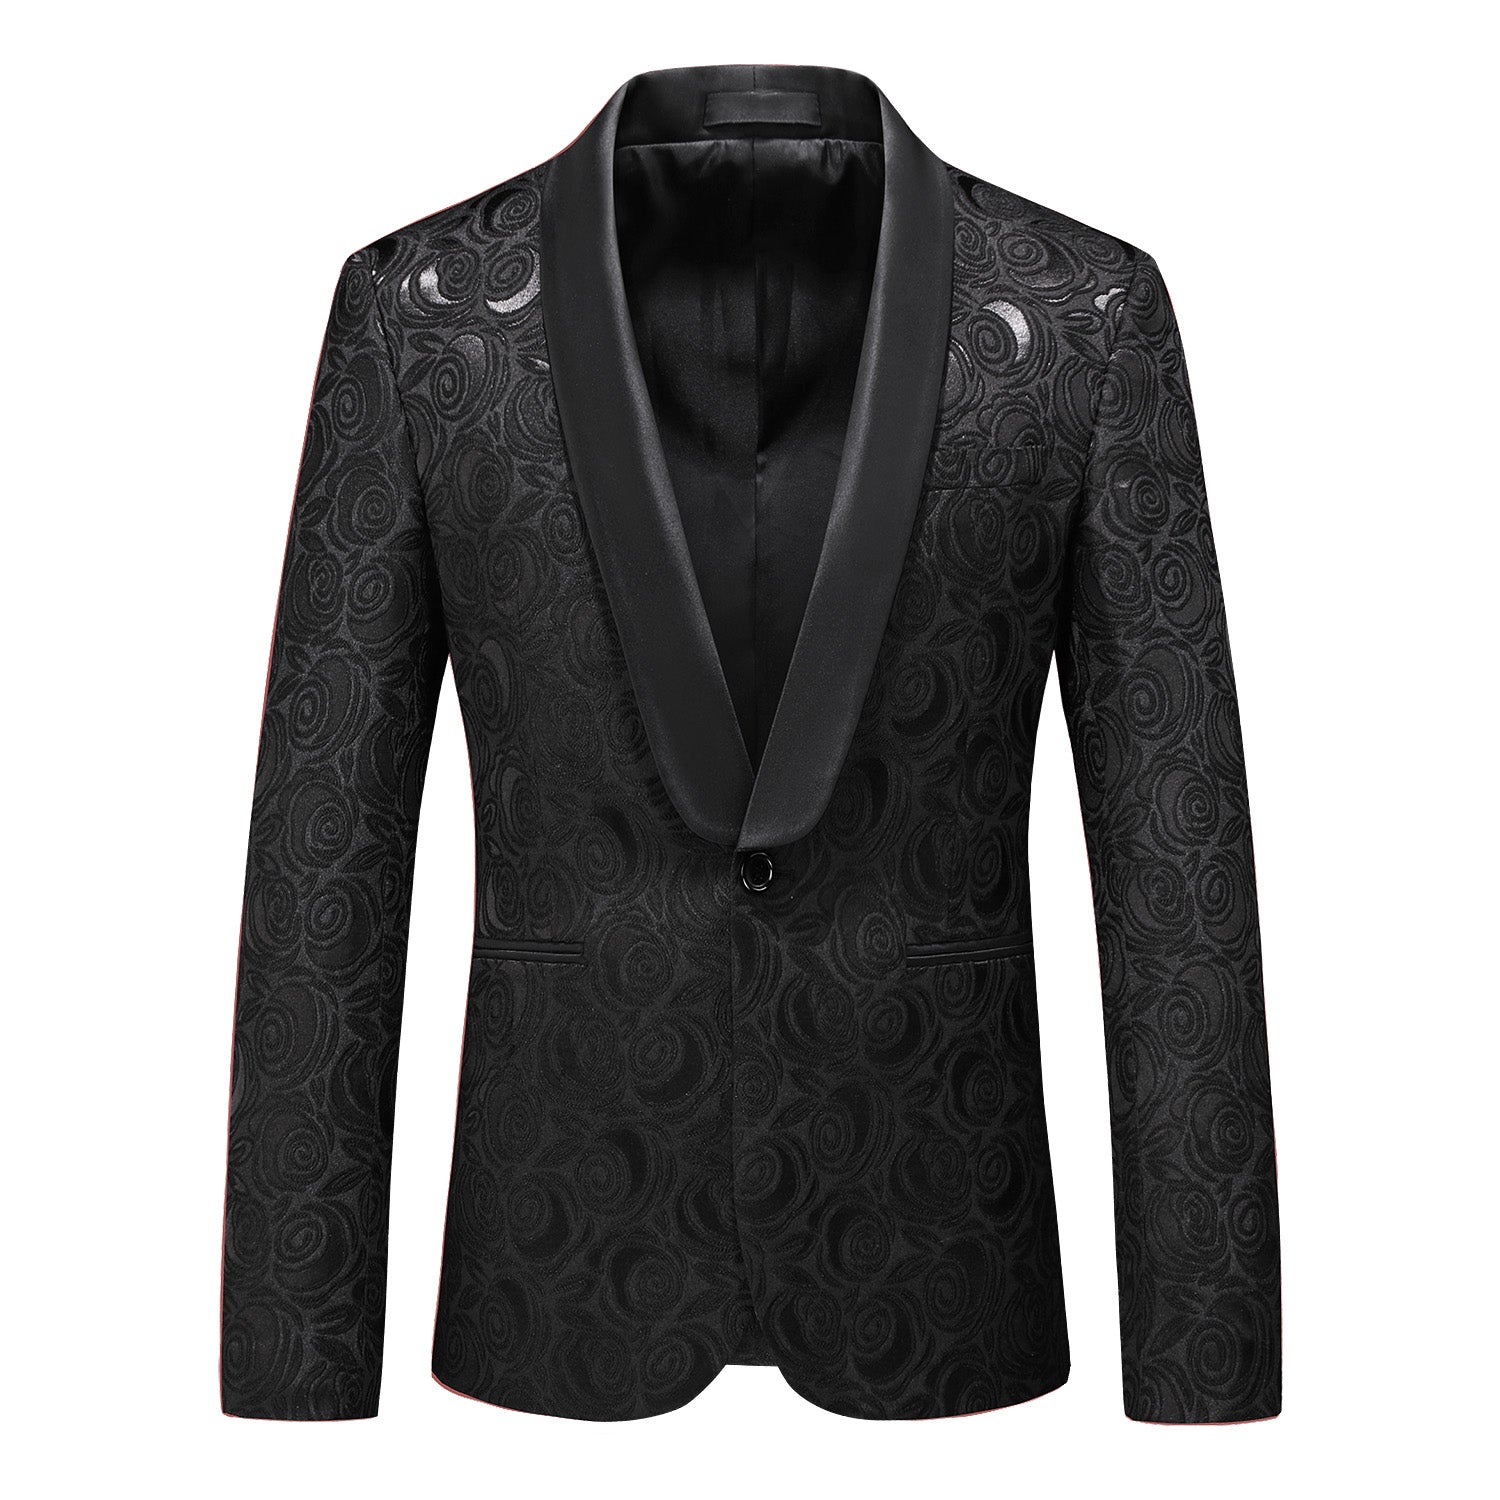 Men's Blazer Jacquard Floral Sport Coat in Black & White